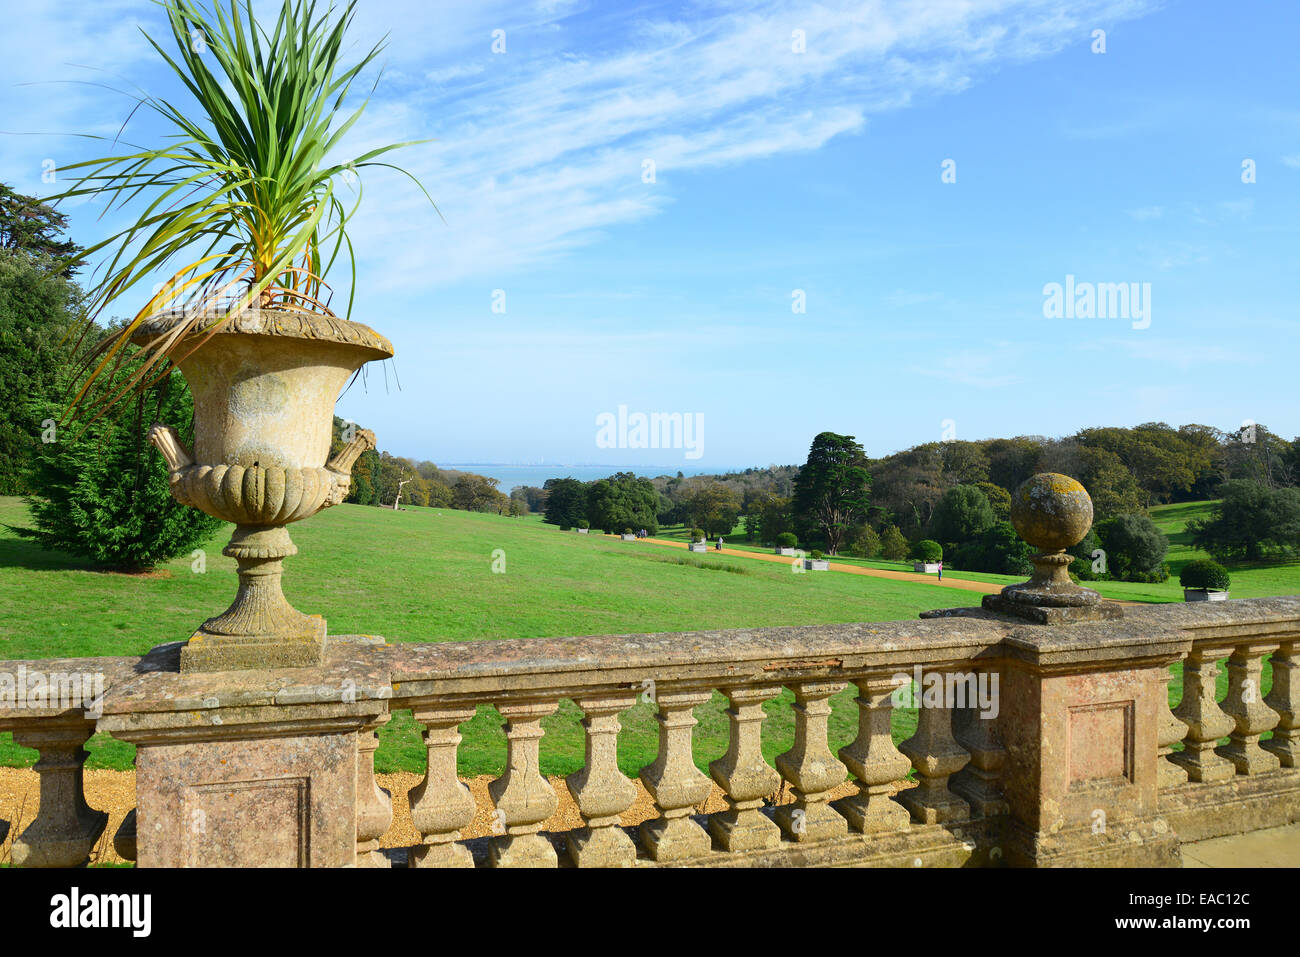 La terrazza del giardino e motivi, Osborne House, East Cowes, Isle of Wight, England, Regno Unito Foto Stock